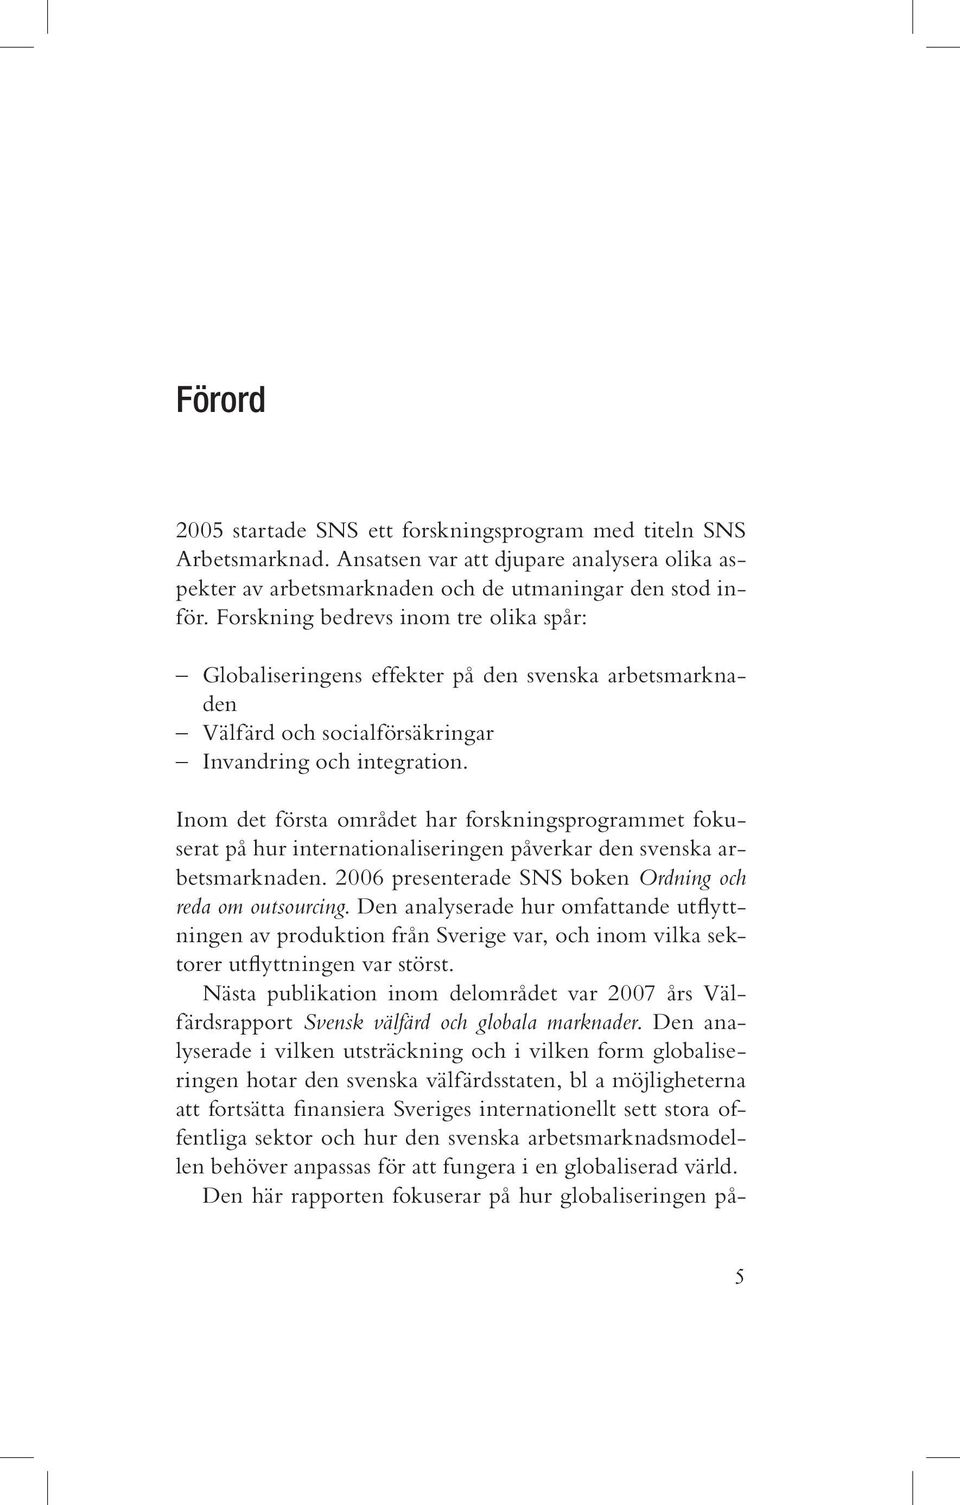 Inom det första området har forskningsprogrammet fokuserat på hur internationaliseringen påverkar den svenska arbetsmarknaden. 2006 presenterade SNS boken Ordning och reda om outsourcing.